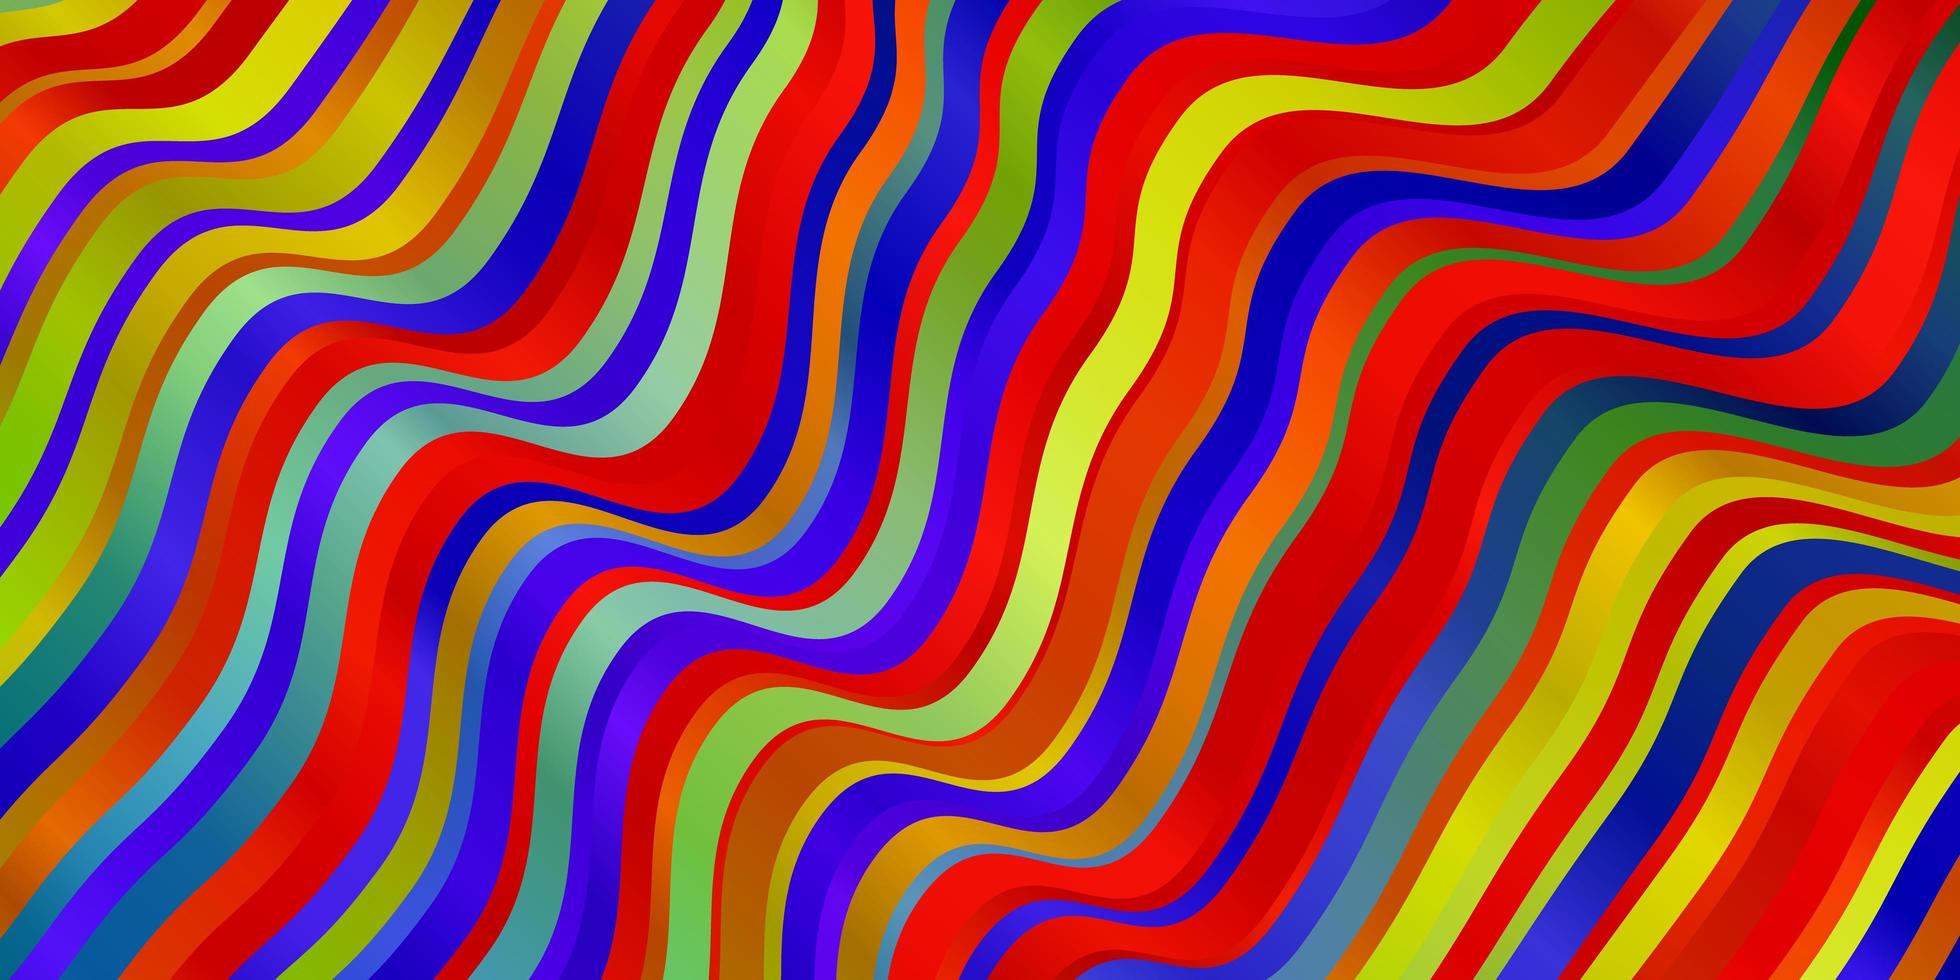 sfondo vettoriale multicolore chiaro con curve.